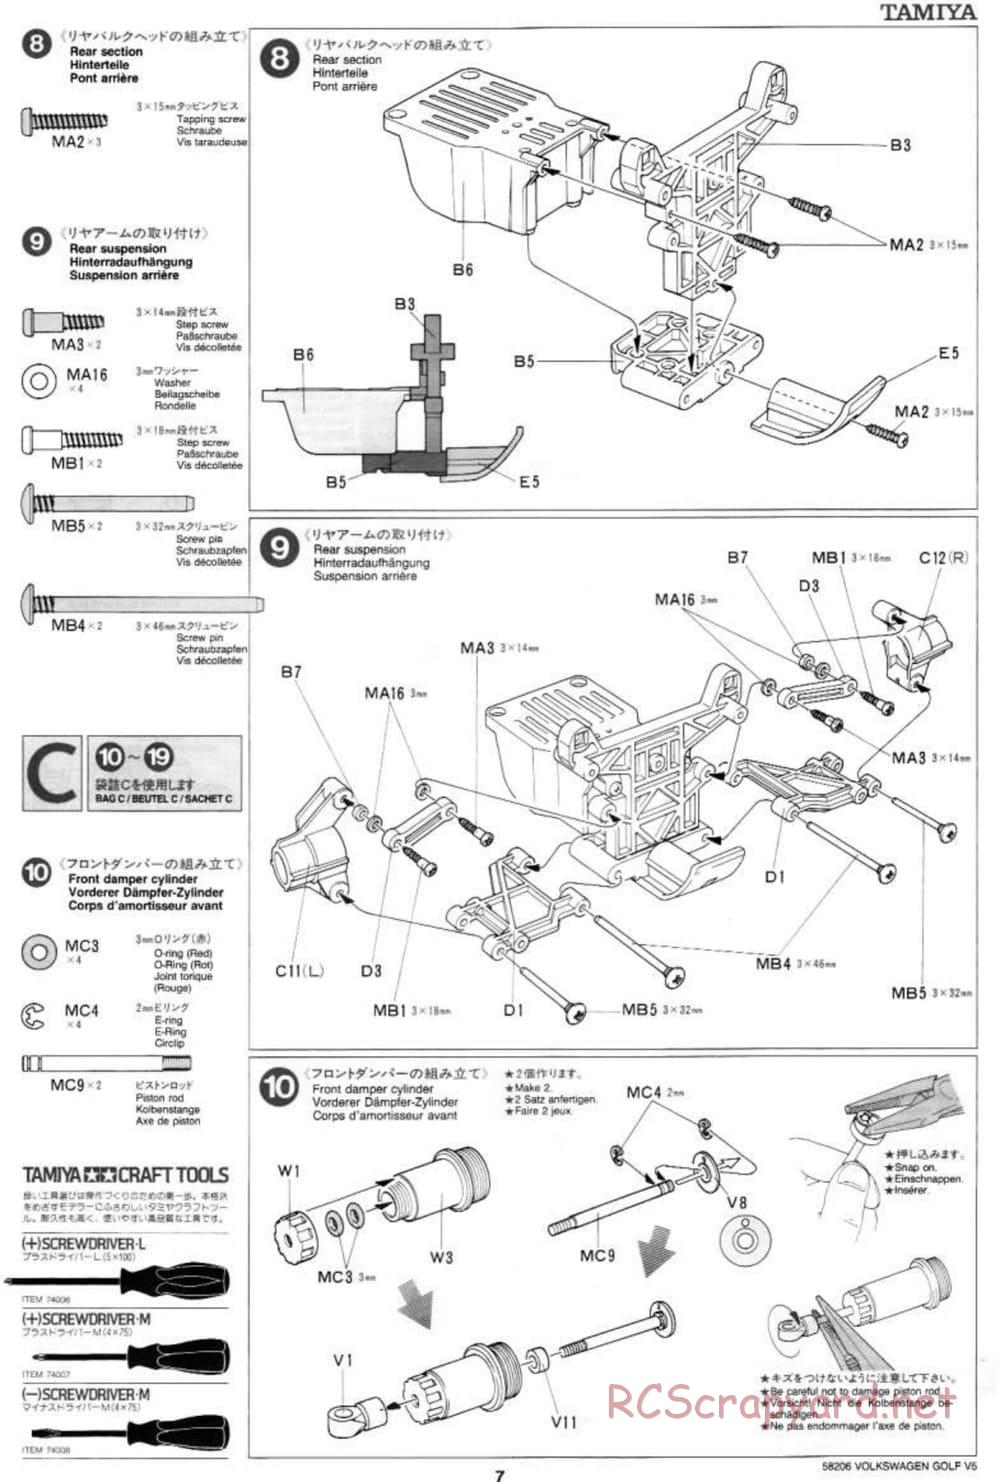 Tamiya - Volkswagen Golf V5 - FF-01 Chassis - Manual - Page 7